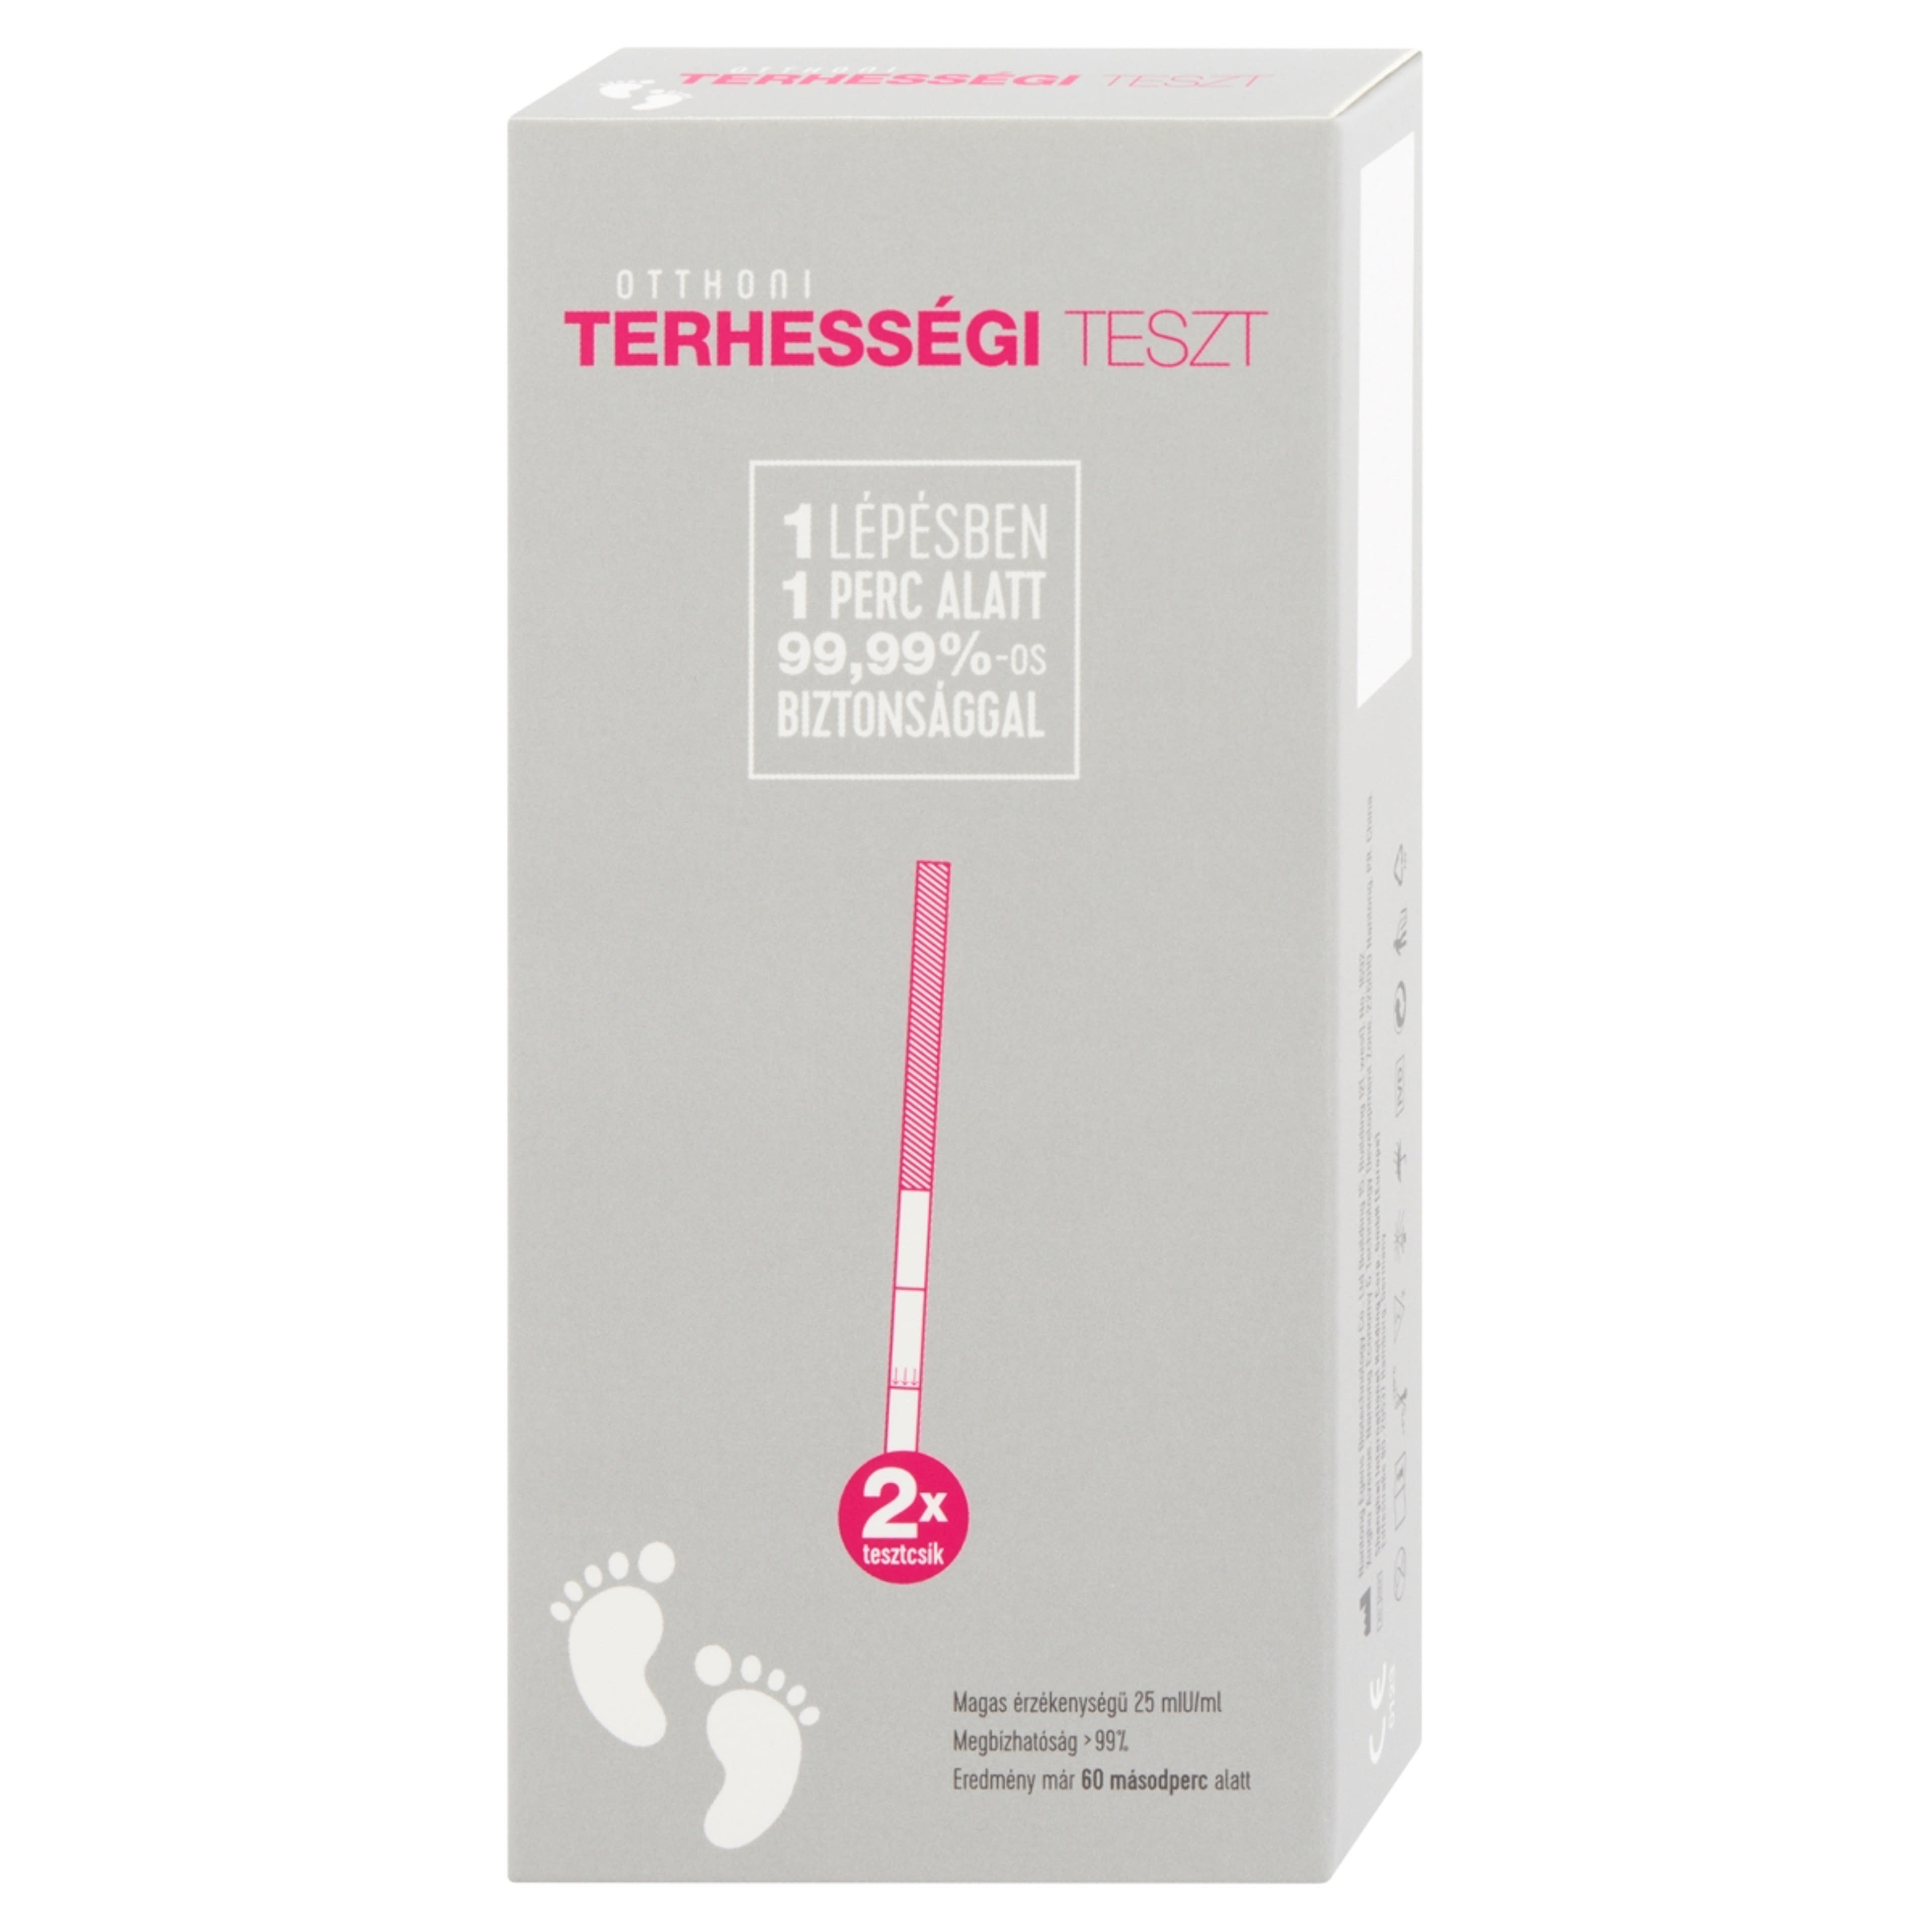 Otthoni terhességi tesztcsík - 2 db